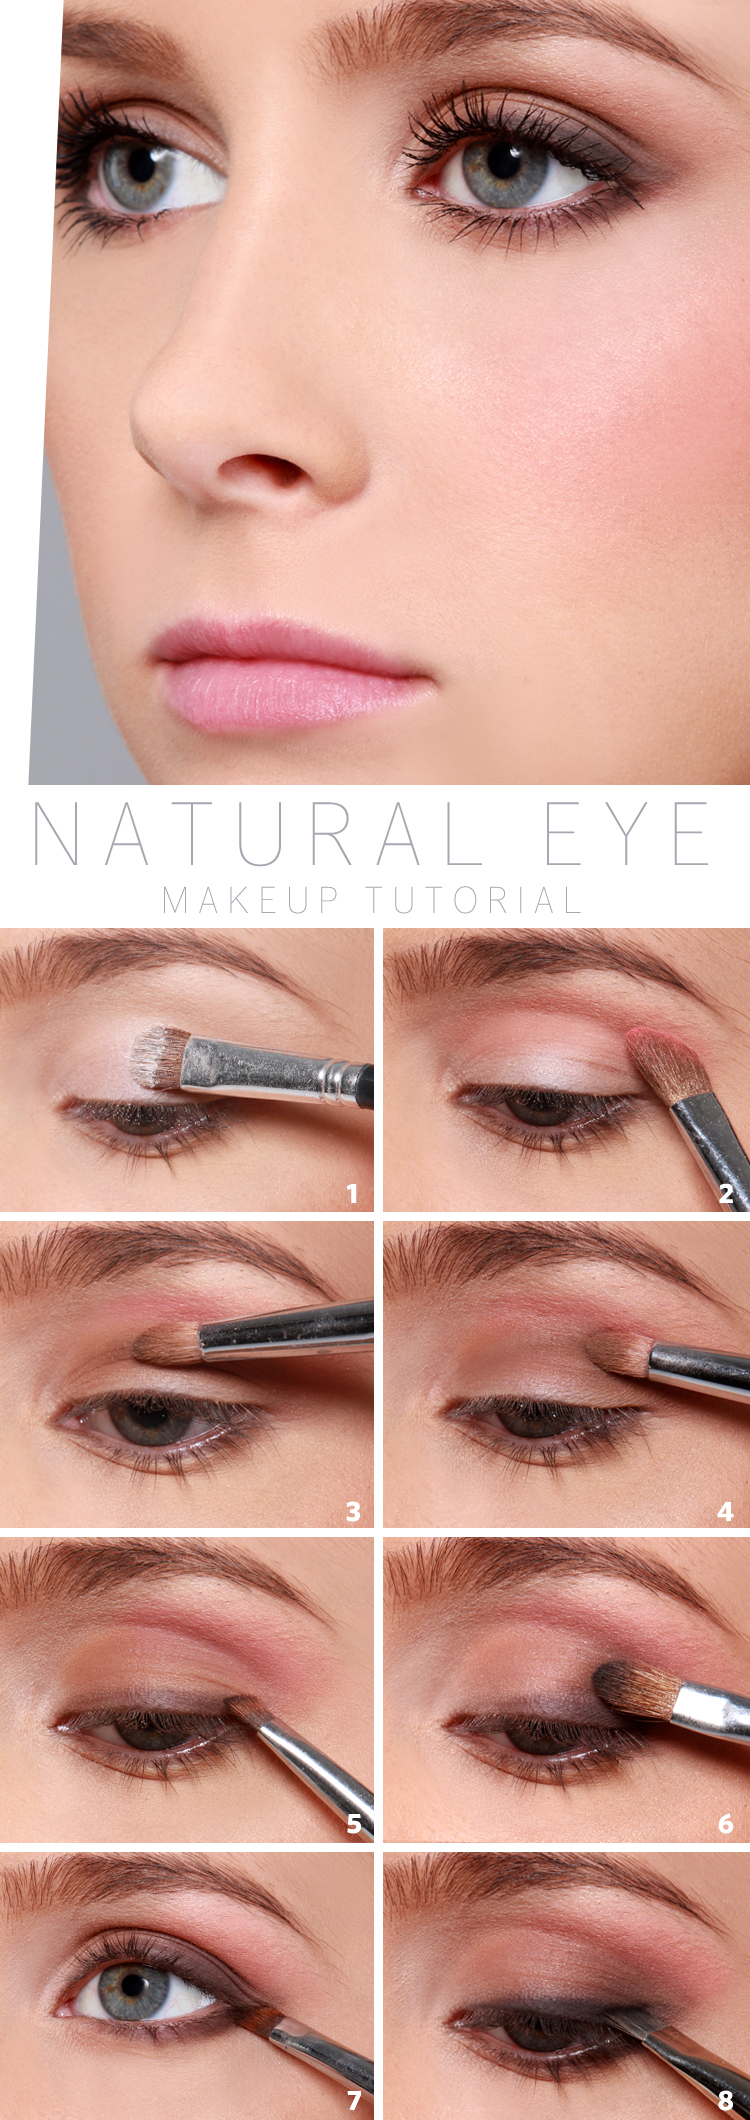 Natural Looking Eye Makeup Lulus How To Natural Eye Makeup Tutorial Lulus Fashion Blog